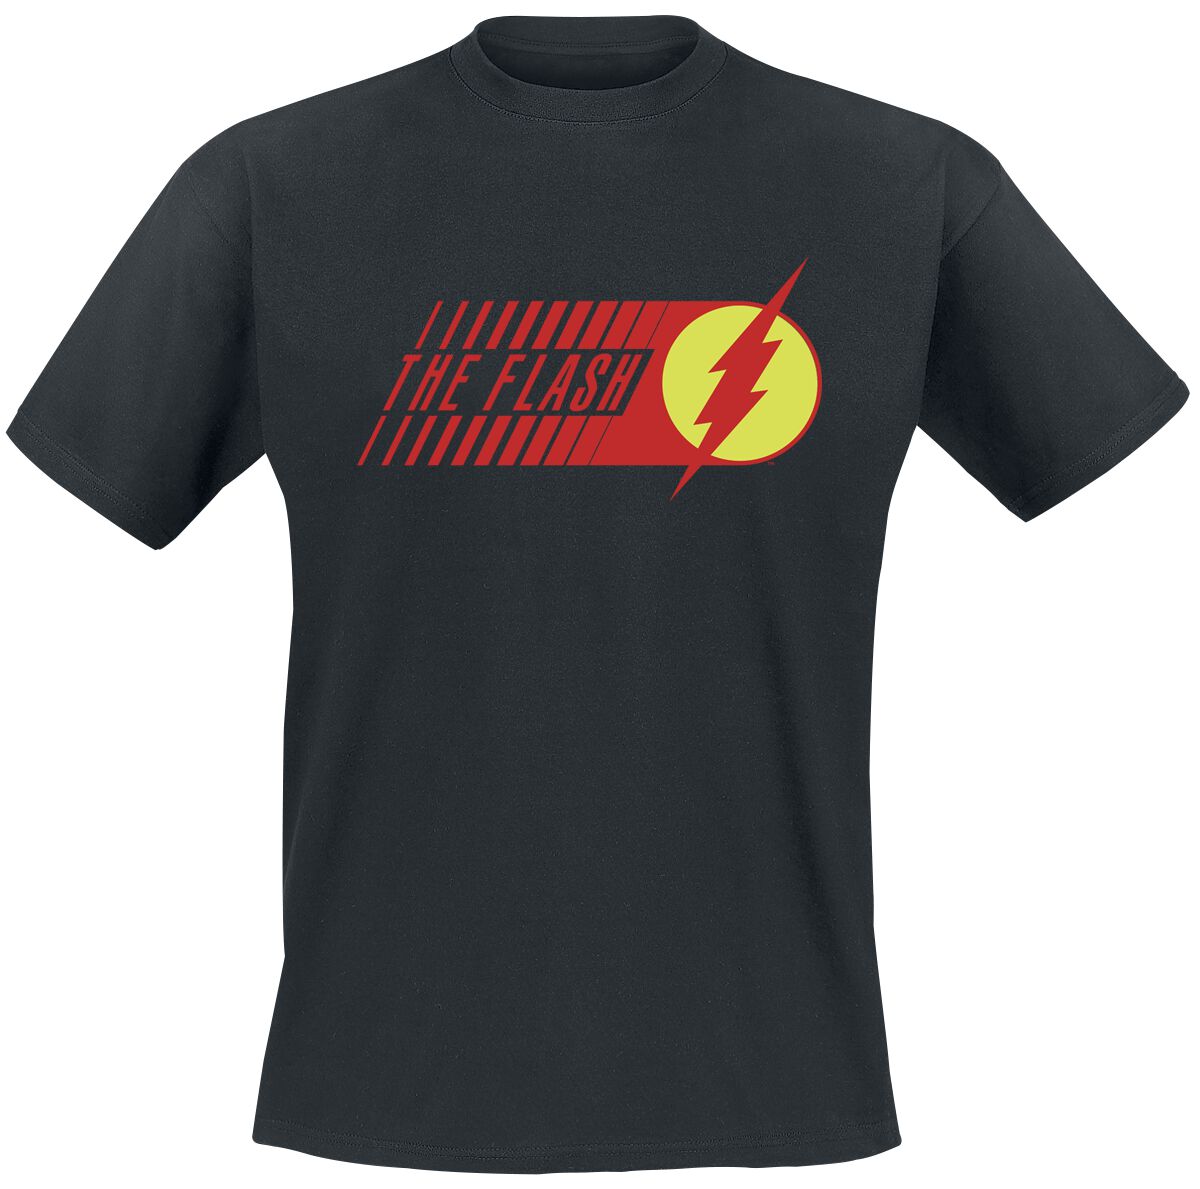 The Flash - DC Comics T-Shirt - Flash - Starlabs - S bis XXL - für Männer - Größe XL - schwarz  - EMP exklusives Merchandise!